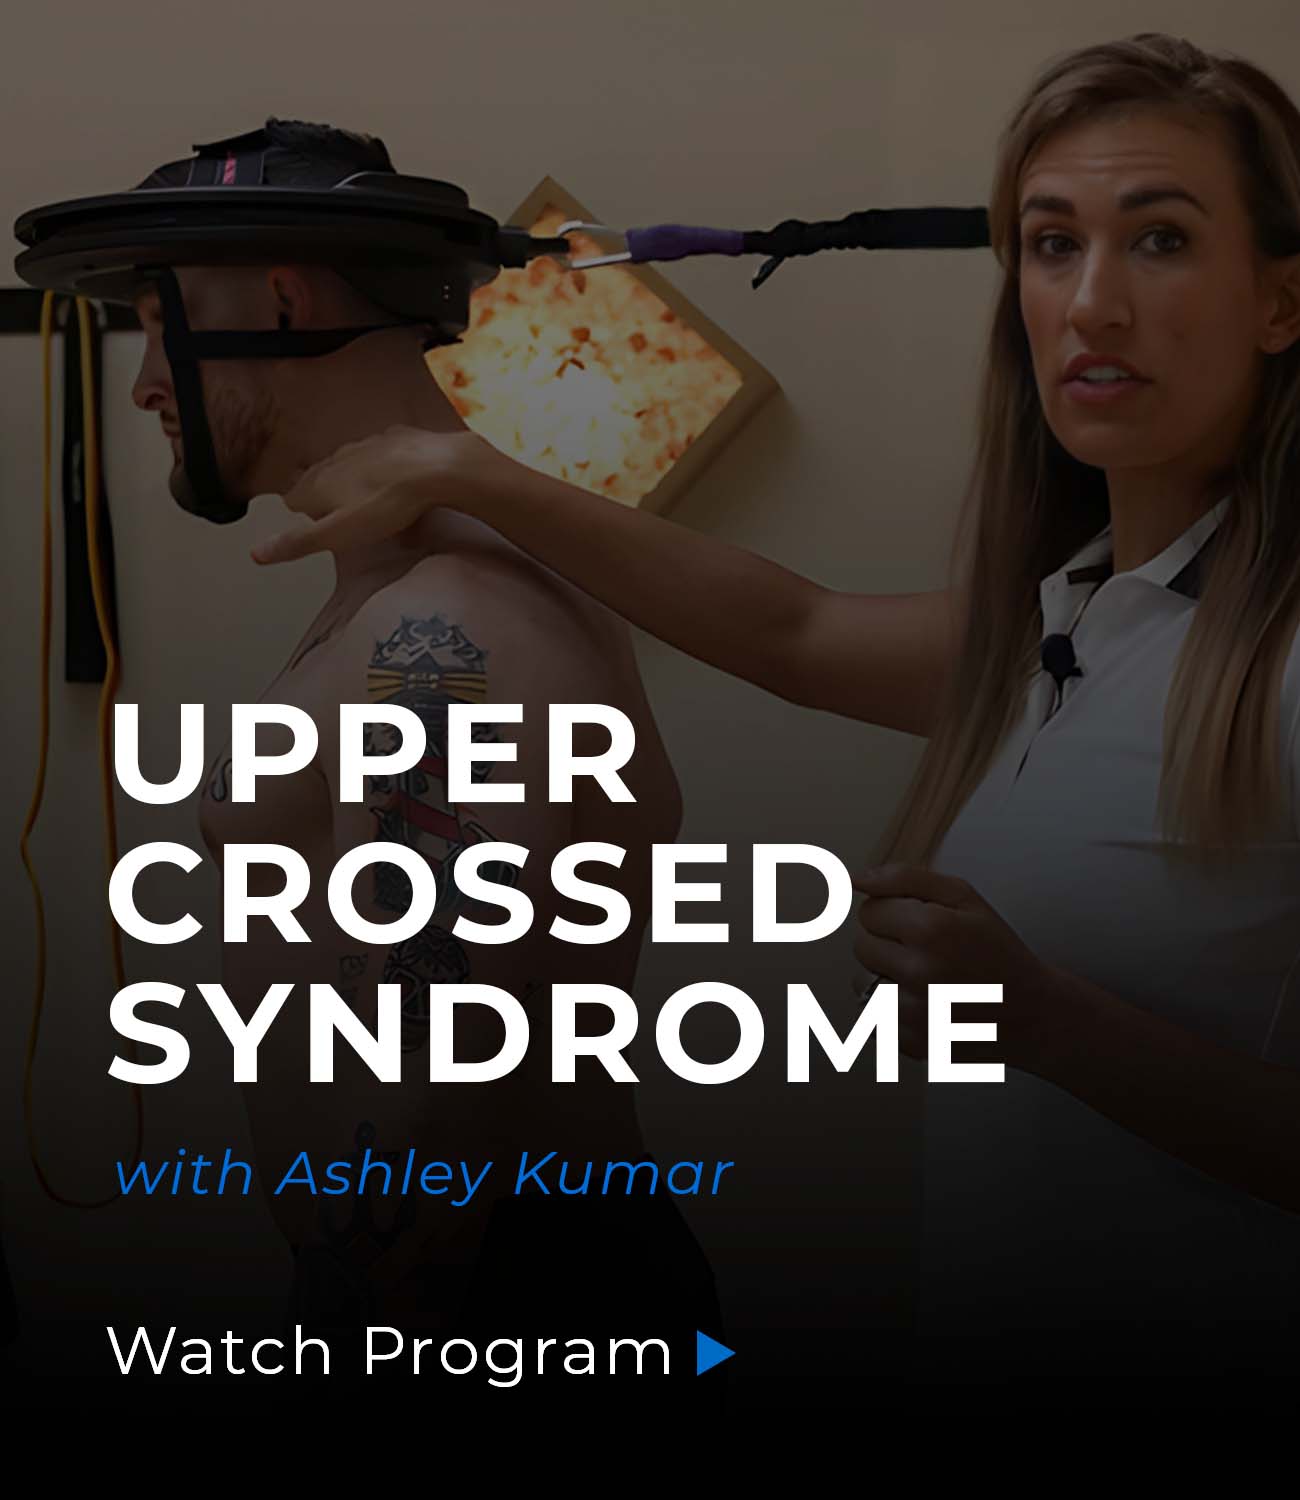 Upper crossed syndrome program cover